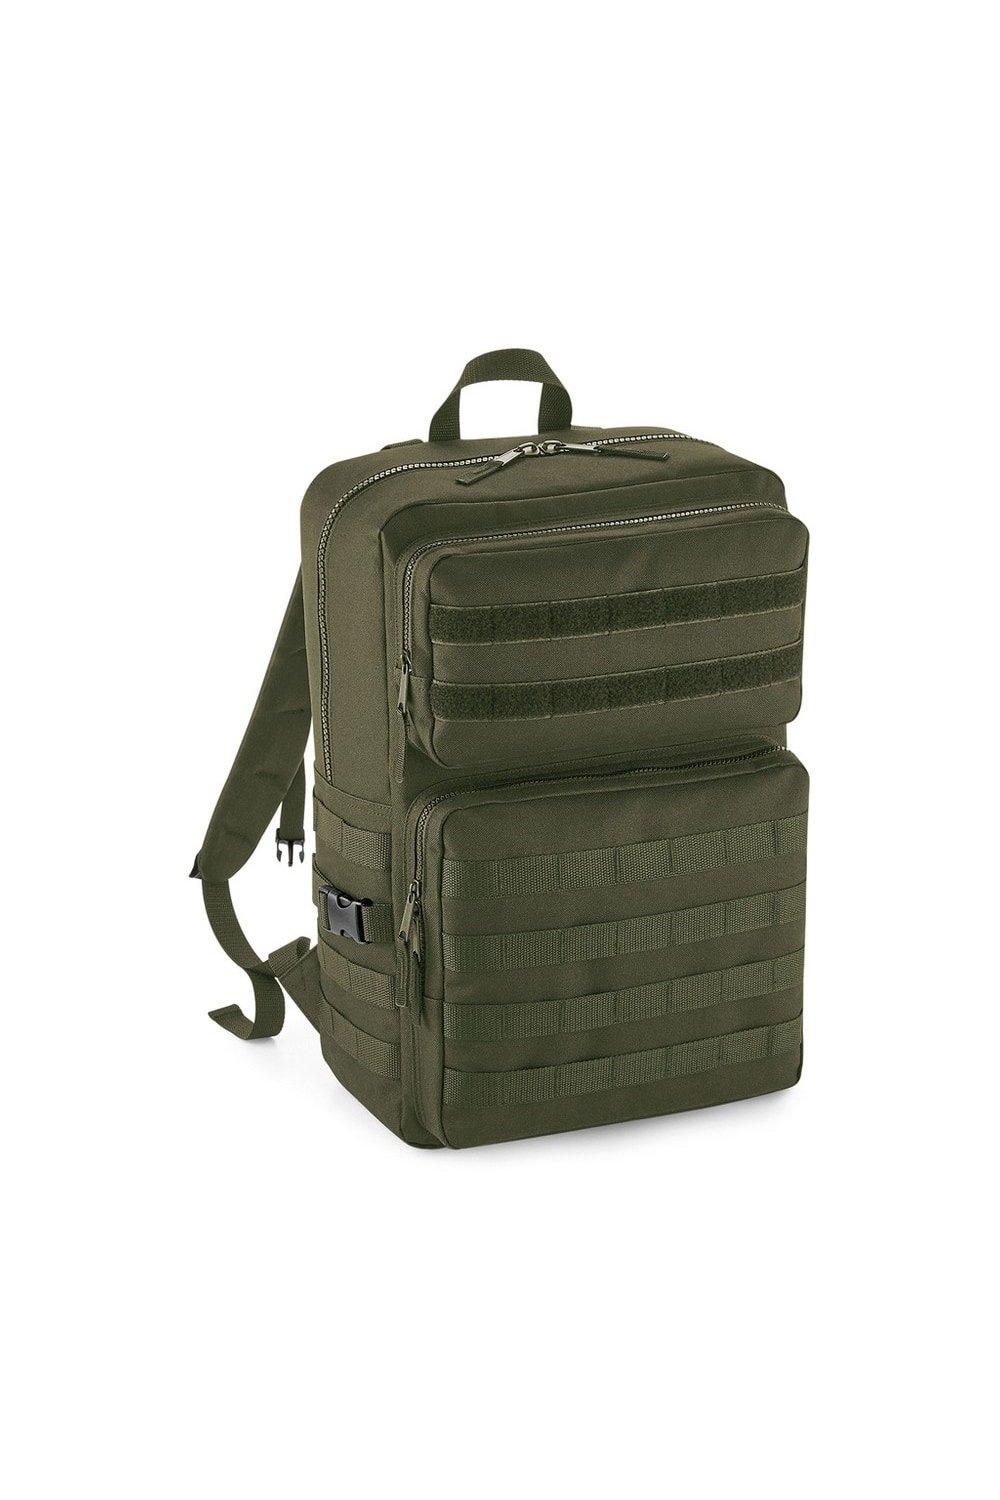 Тактический рюкзак MOLLE Bagbase, зеленый huntvp 1000d тактический рюкзак 45l molle рюкзак штурмовой пакет открытый кемпинг туризм рюкзак открытый рюкзак черный